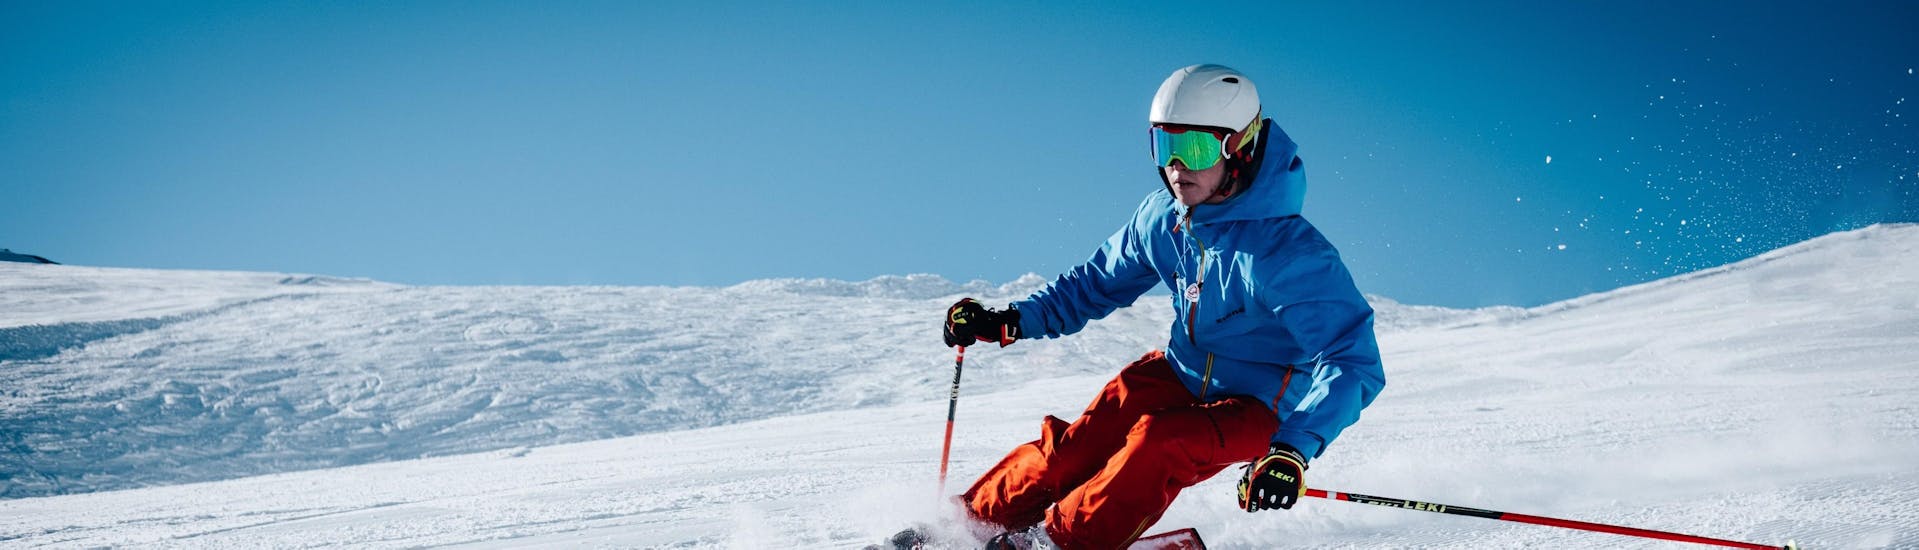 Un skieur descend une piste avec assurance grâce à son Cours particulier de ski pour Adultes - Tous niveaux avec l'école de ski suisse Charmey.